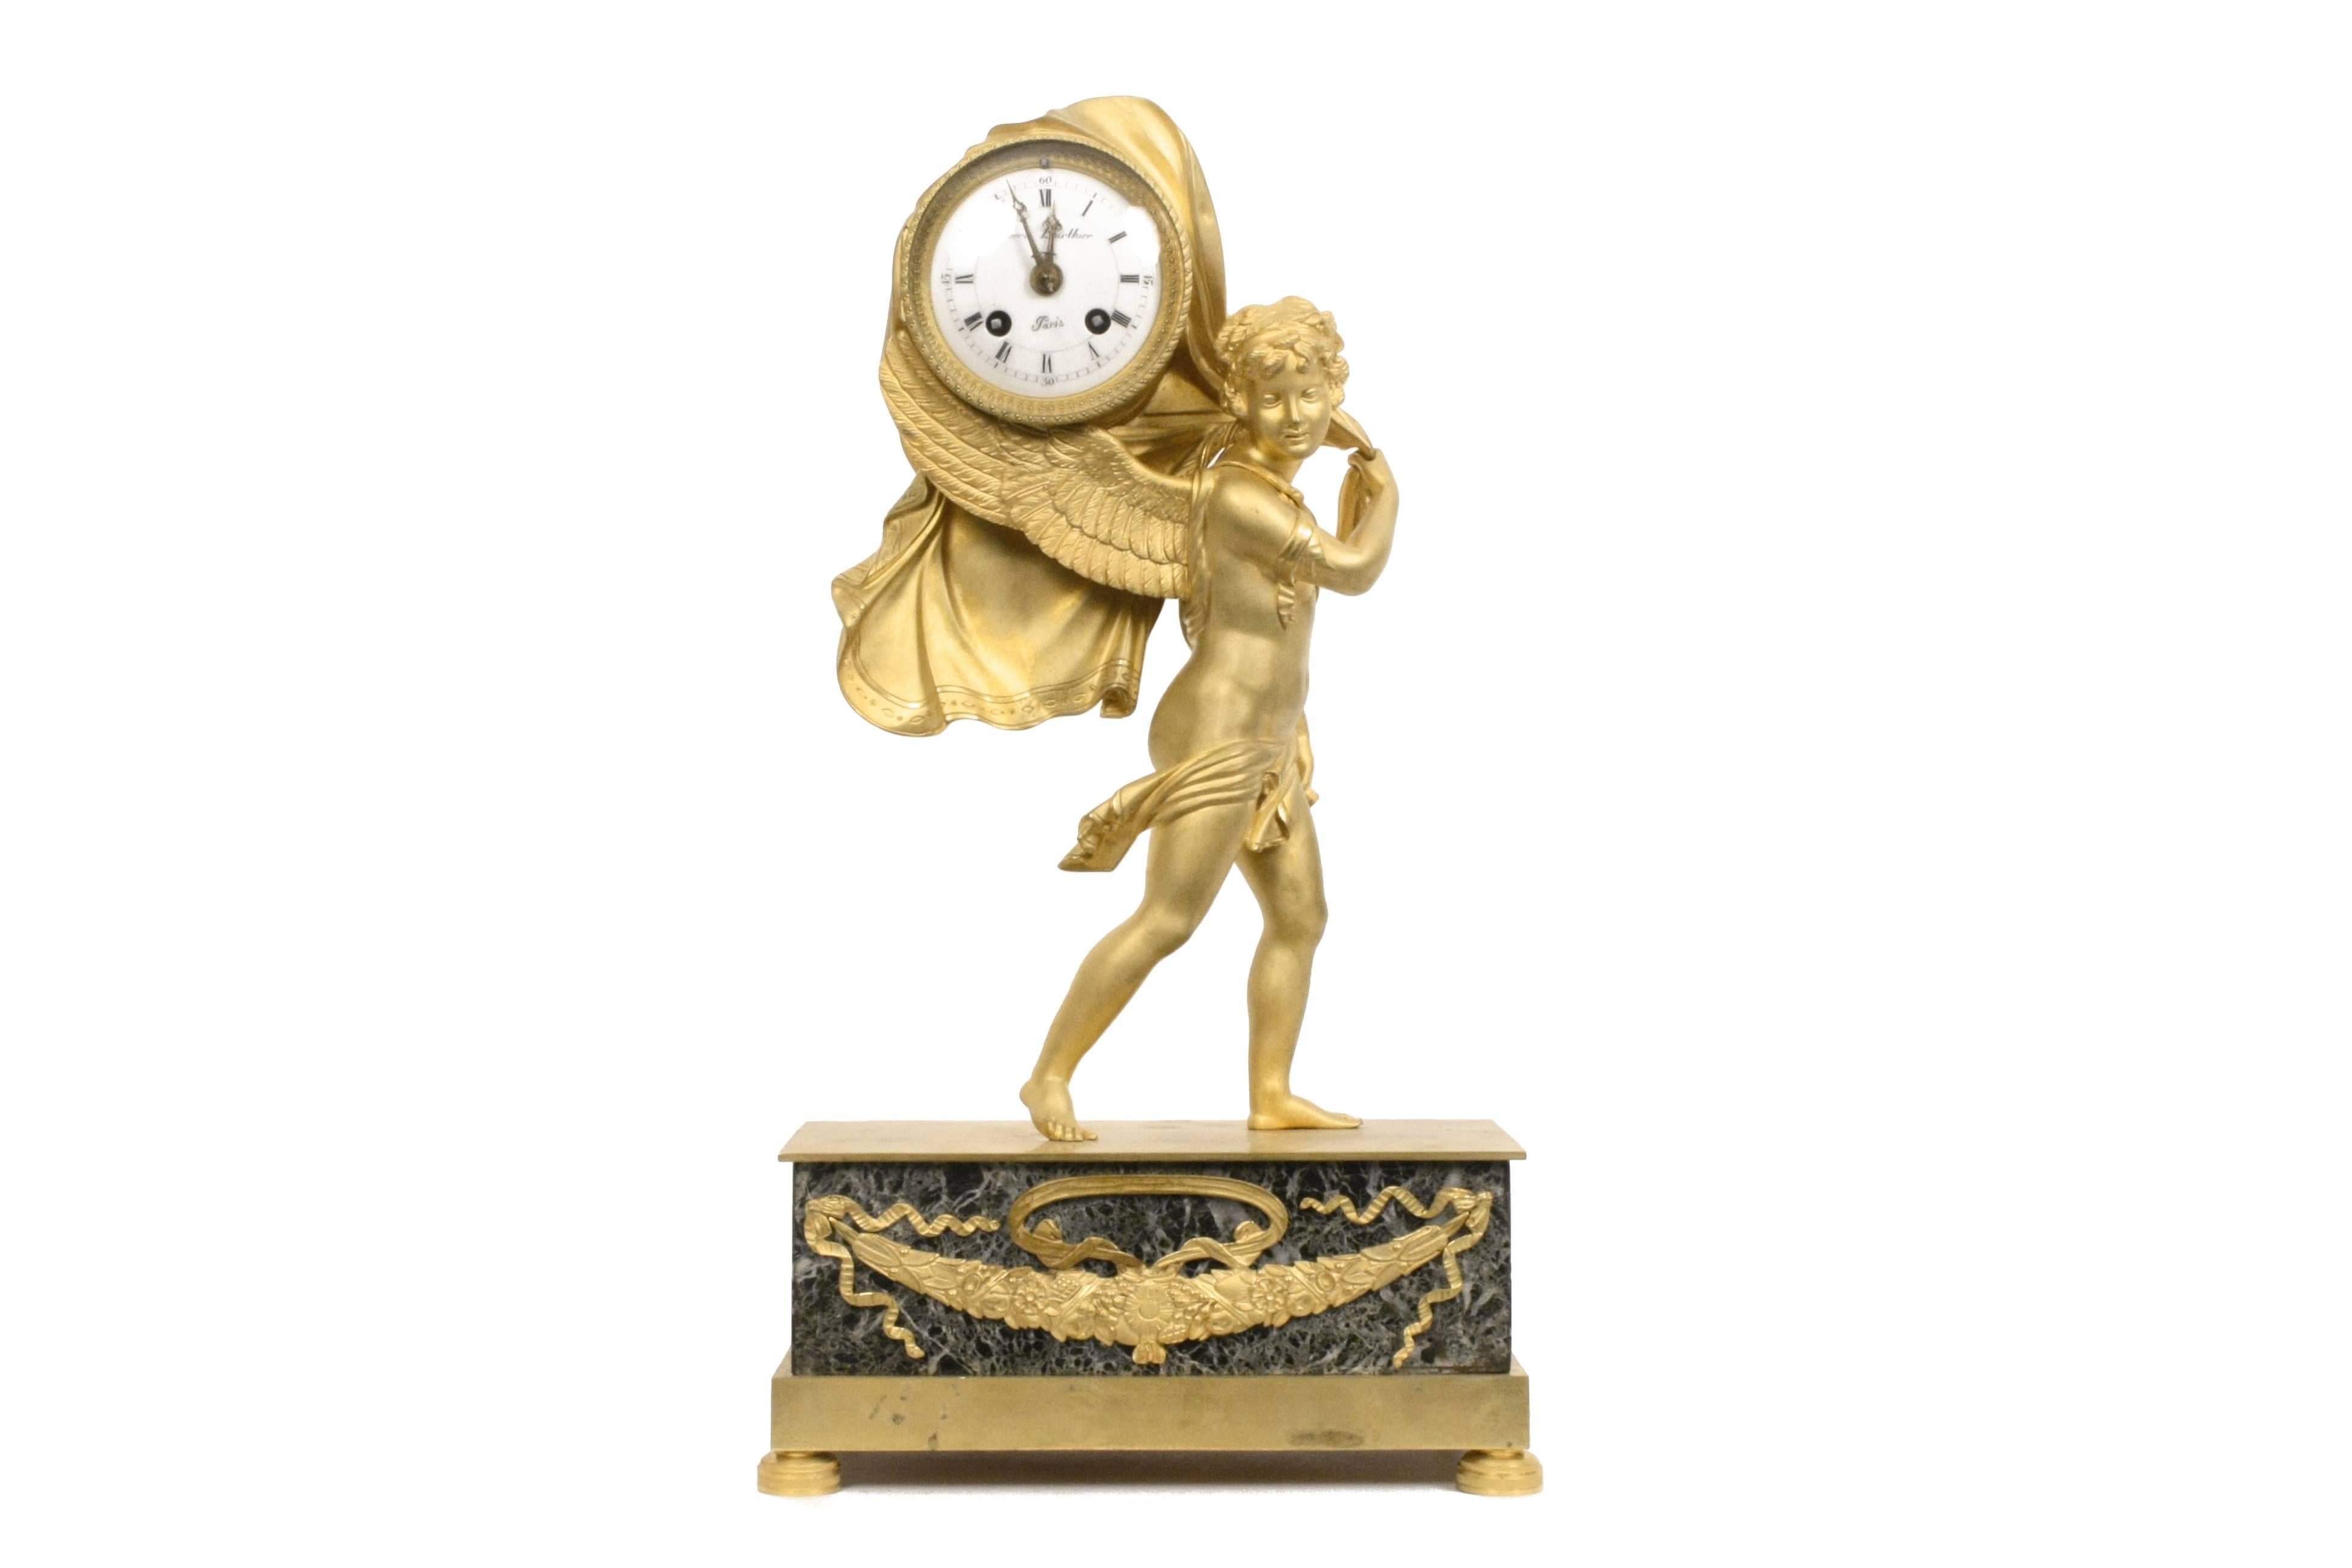 Cupidon ailé à la robe fluide, l'horloge reposant entre les ailes et le tissu, reposant sur un socle en verde antico monté en bronze doré. 
France, première moitié du XIXe siècle.

Mesures : H 16 in.